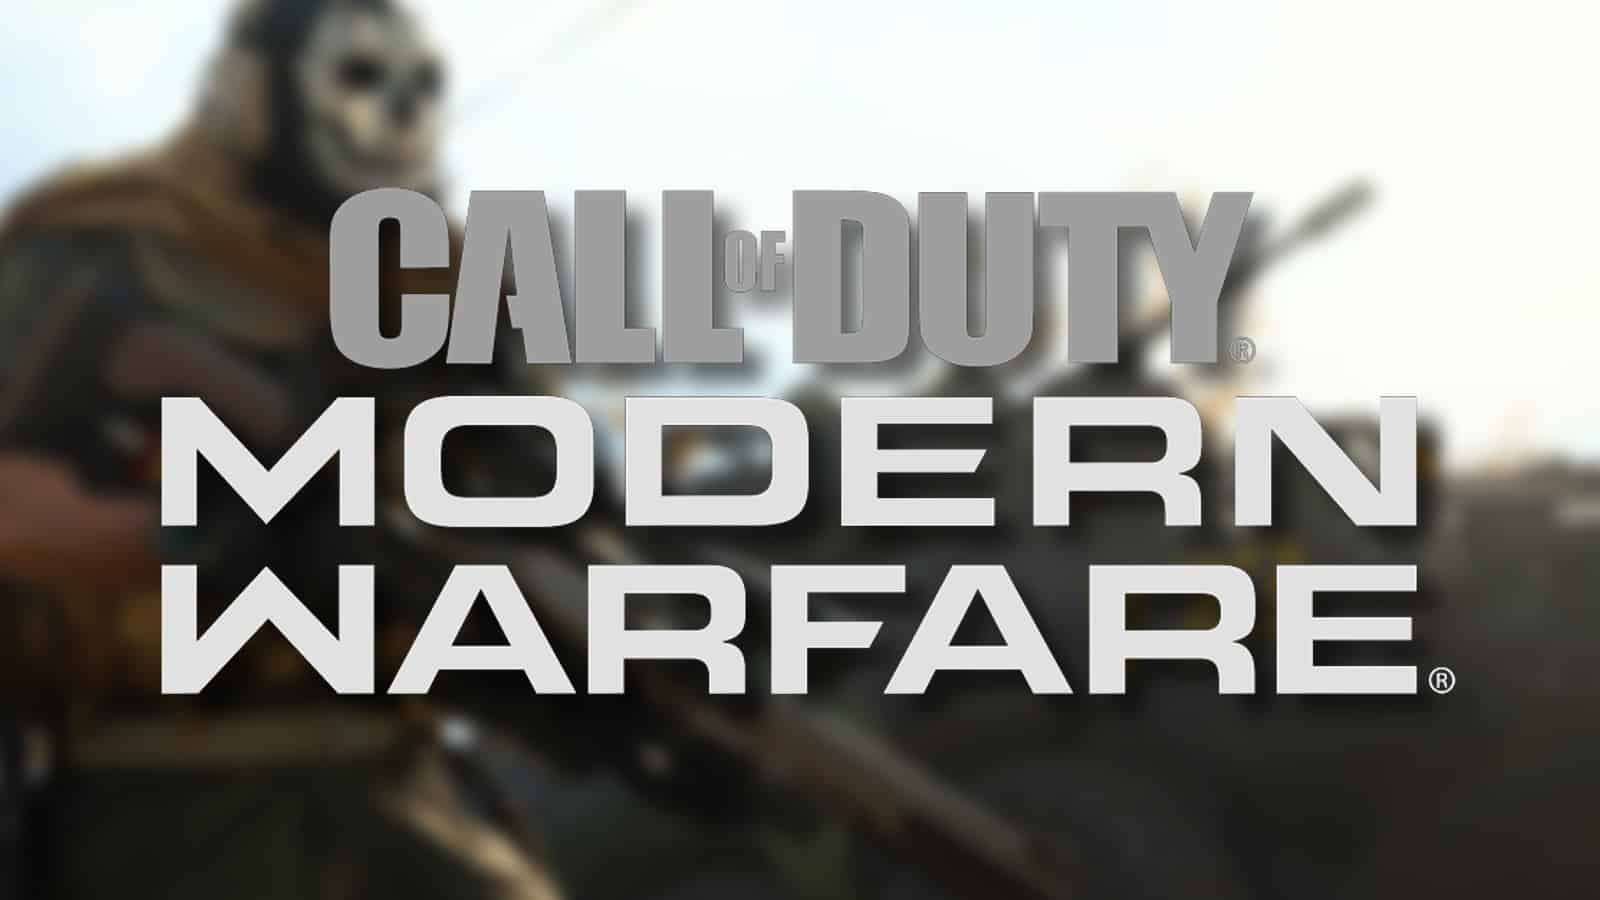 CoD 2022 leaker reveals when Modern Warfare 2 reveal & teasers will start -  Dexerto